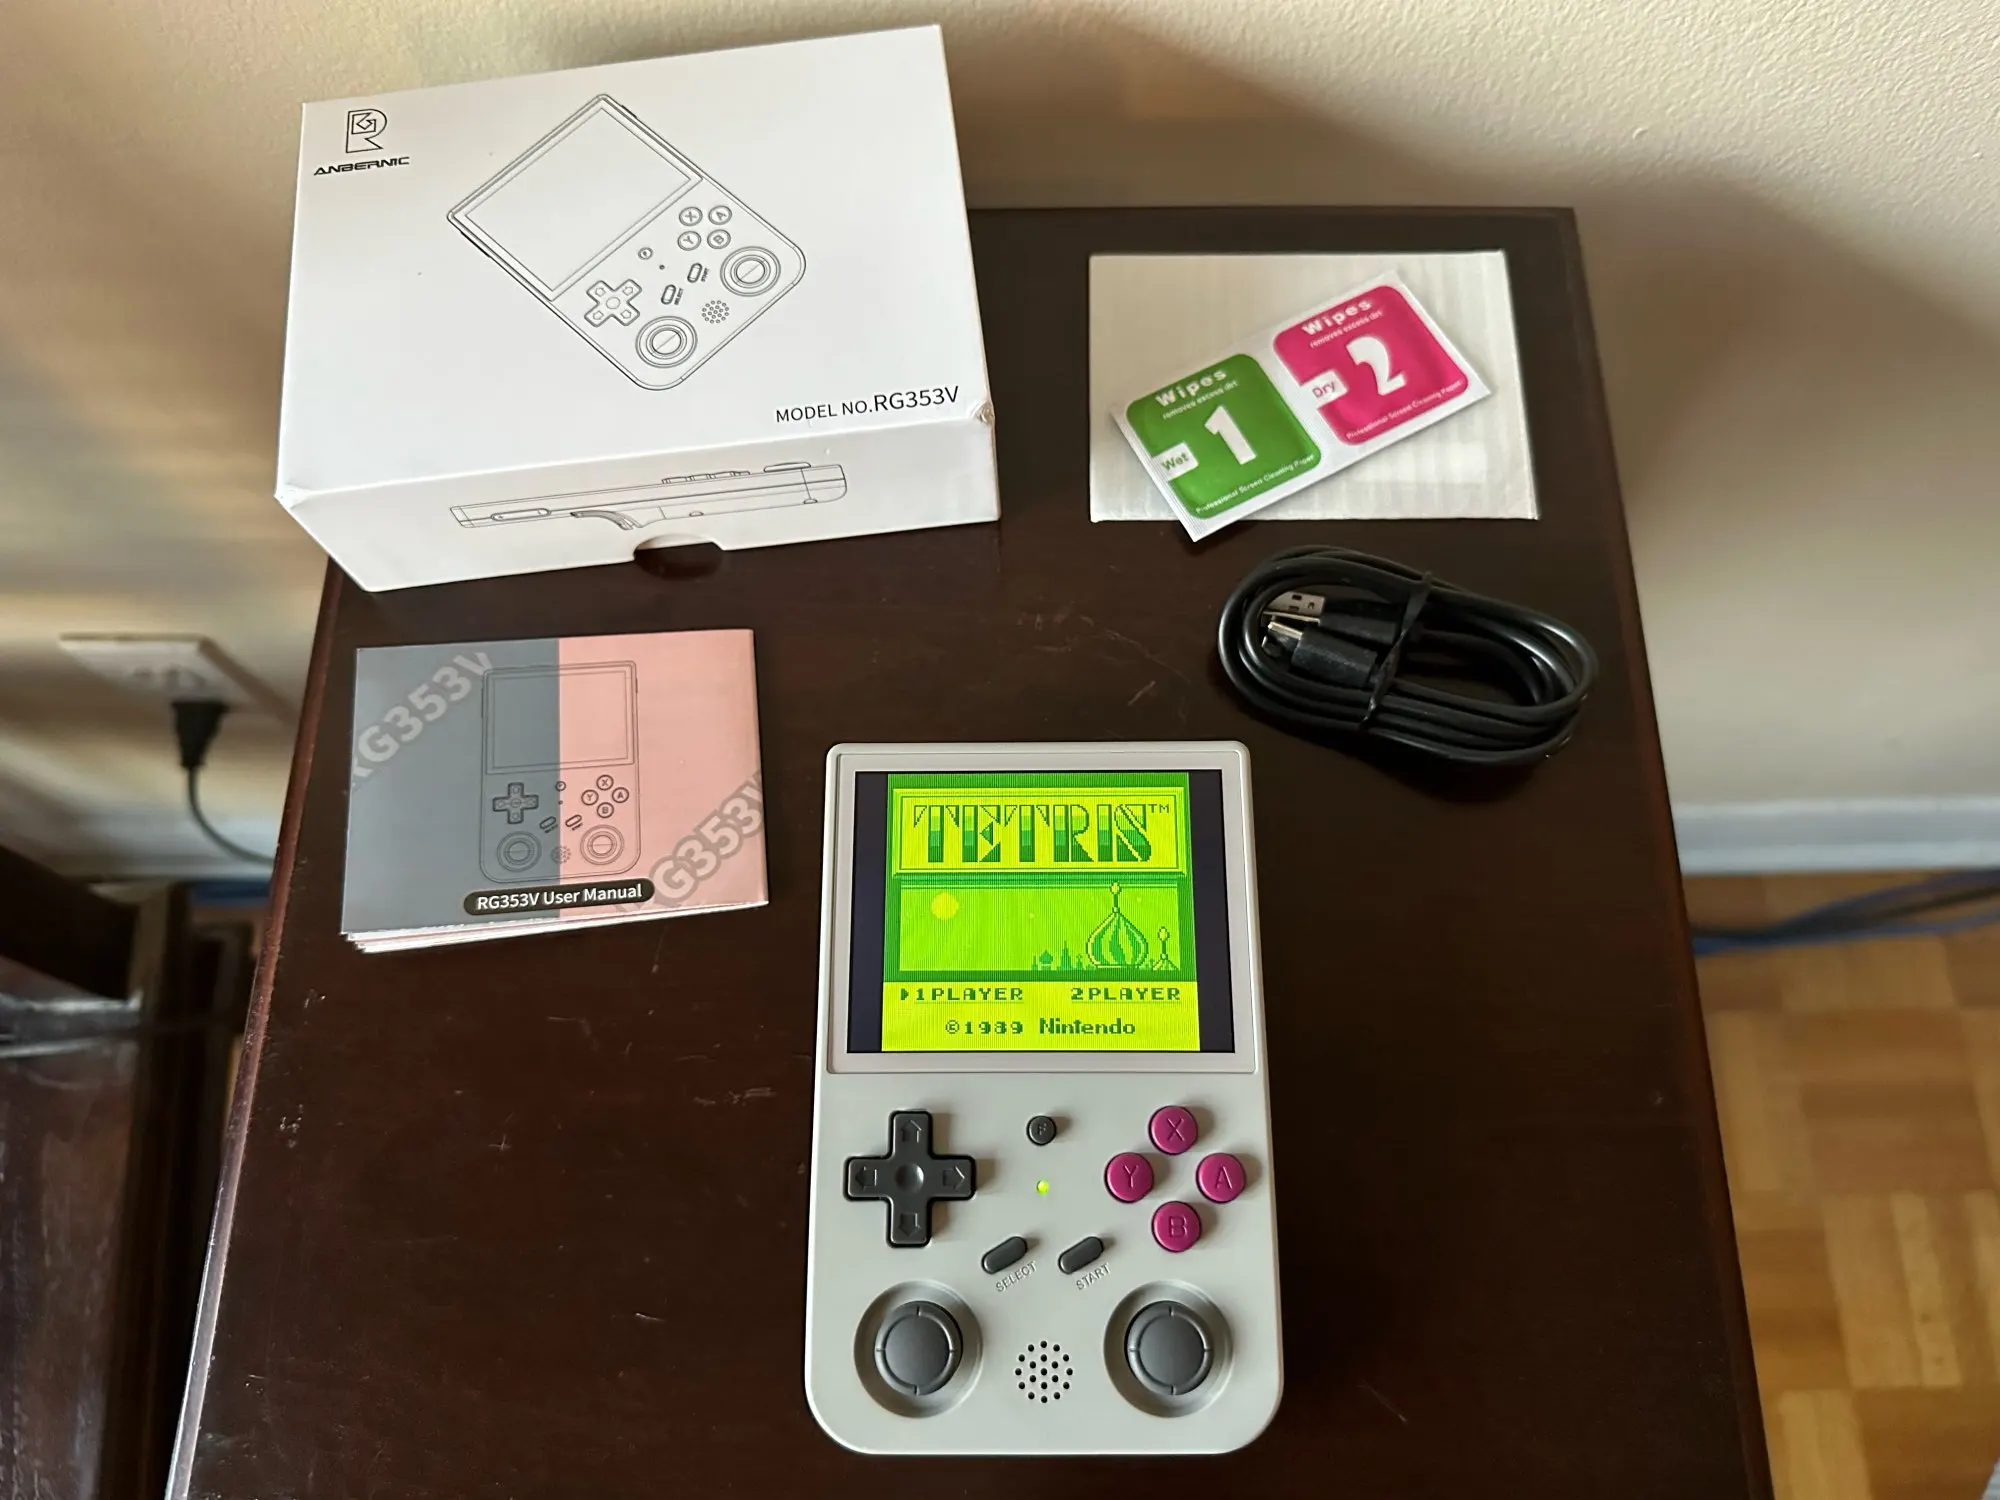 Console Portable ANBERNIC RG353V - Émulateur LINUX 3.5" 640x480, Cadeau Enfant photo review